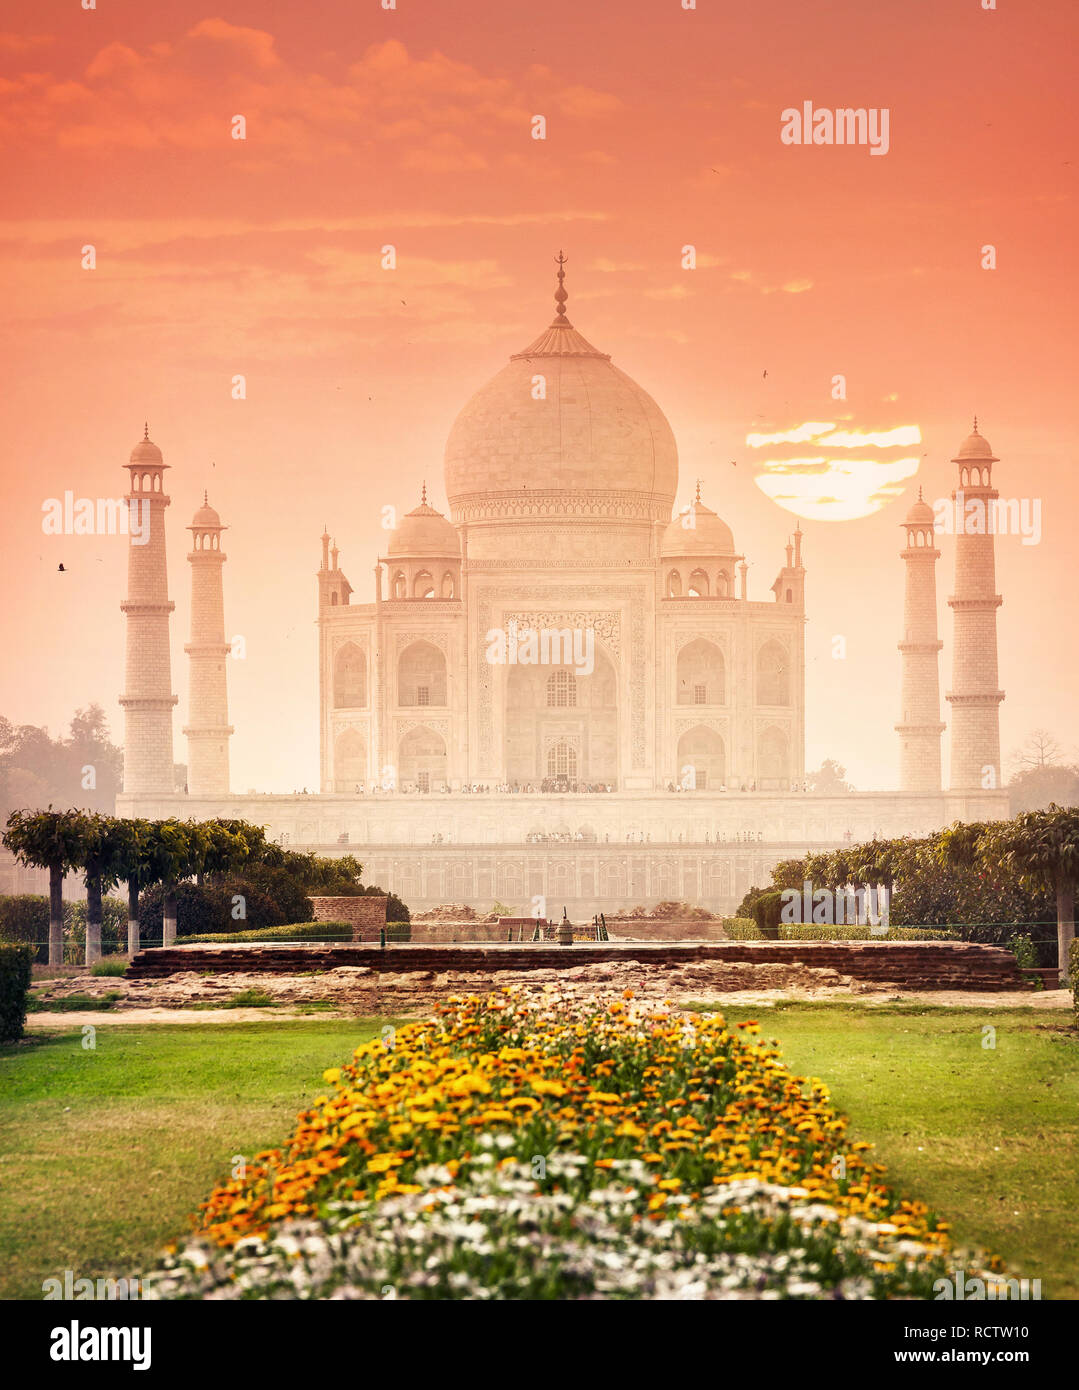 Taj Mahal una de las maravillas del mundo en rojo y hermoso jardín en Agra, Uttar Pradesh, India Foto de stock